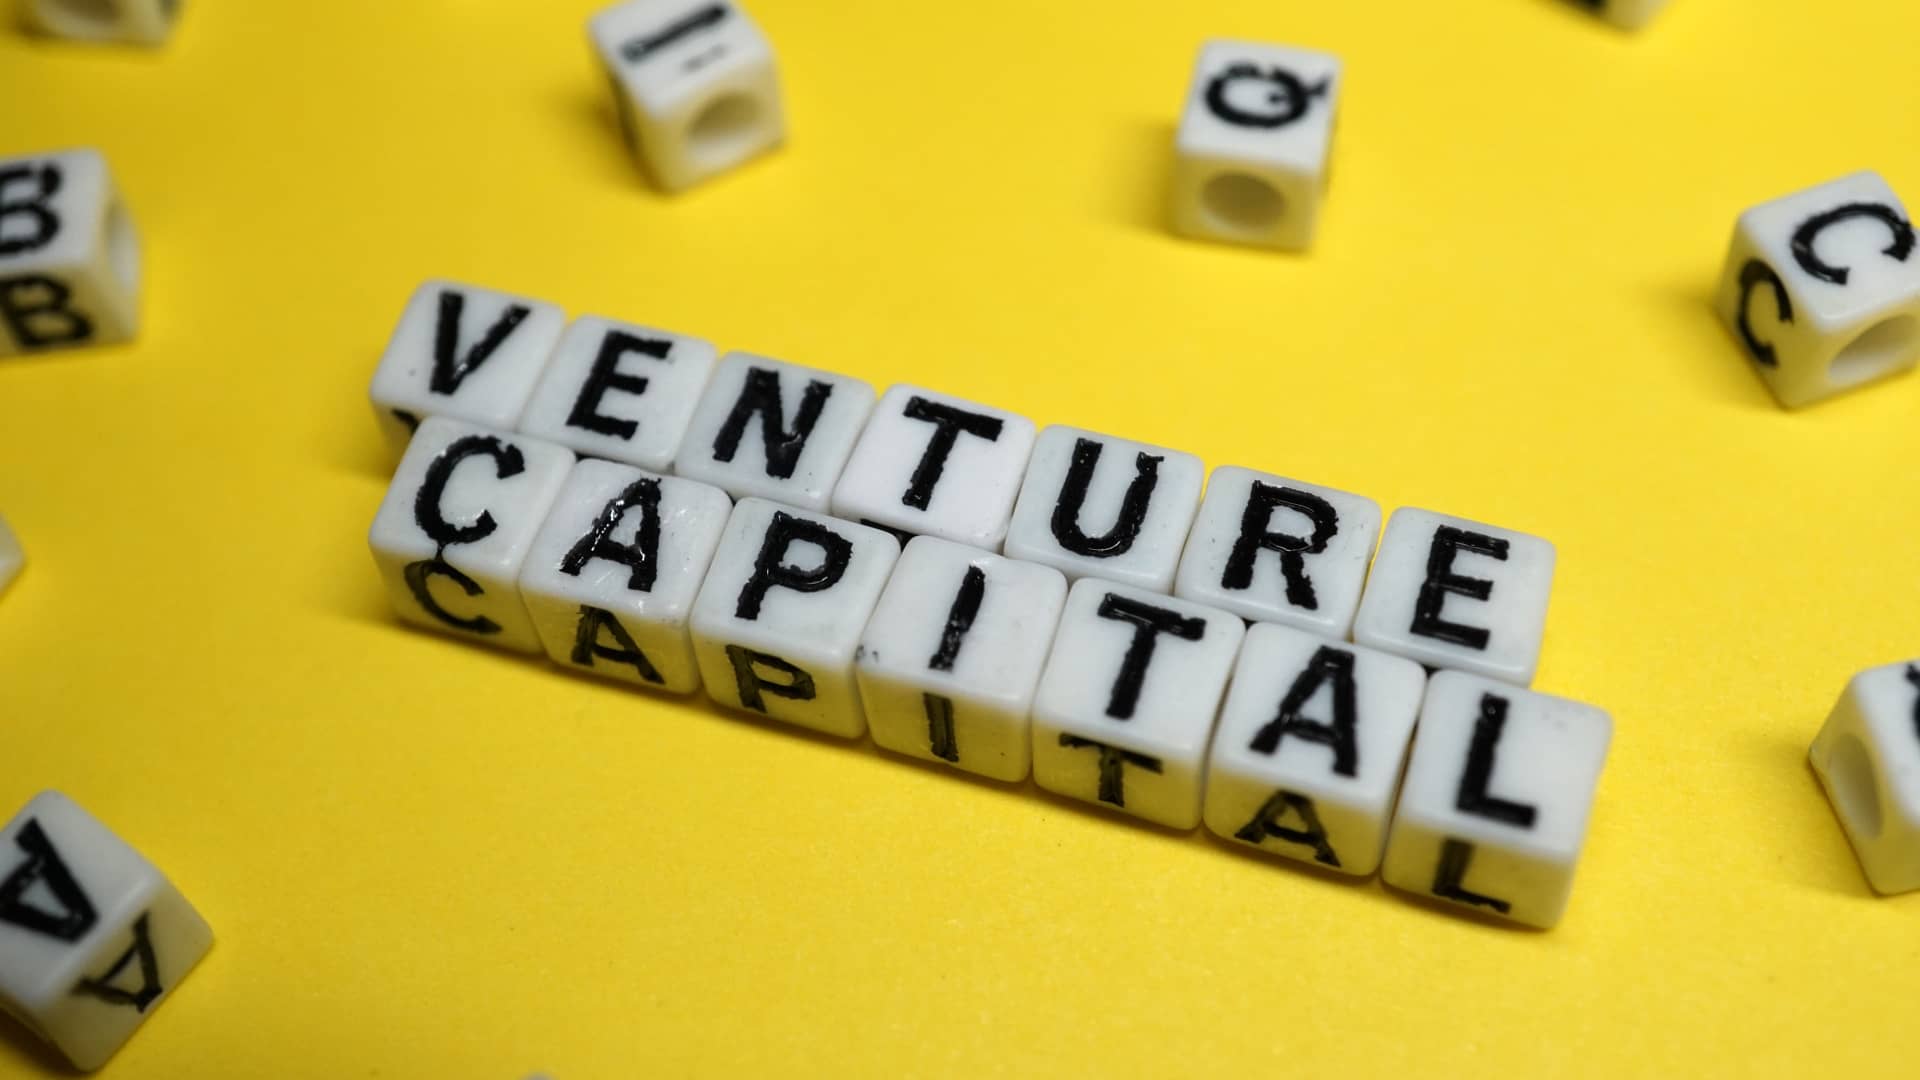 ¿Qué es venture capital? Ventajas y desventajas